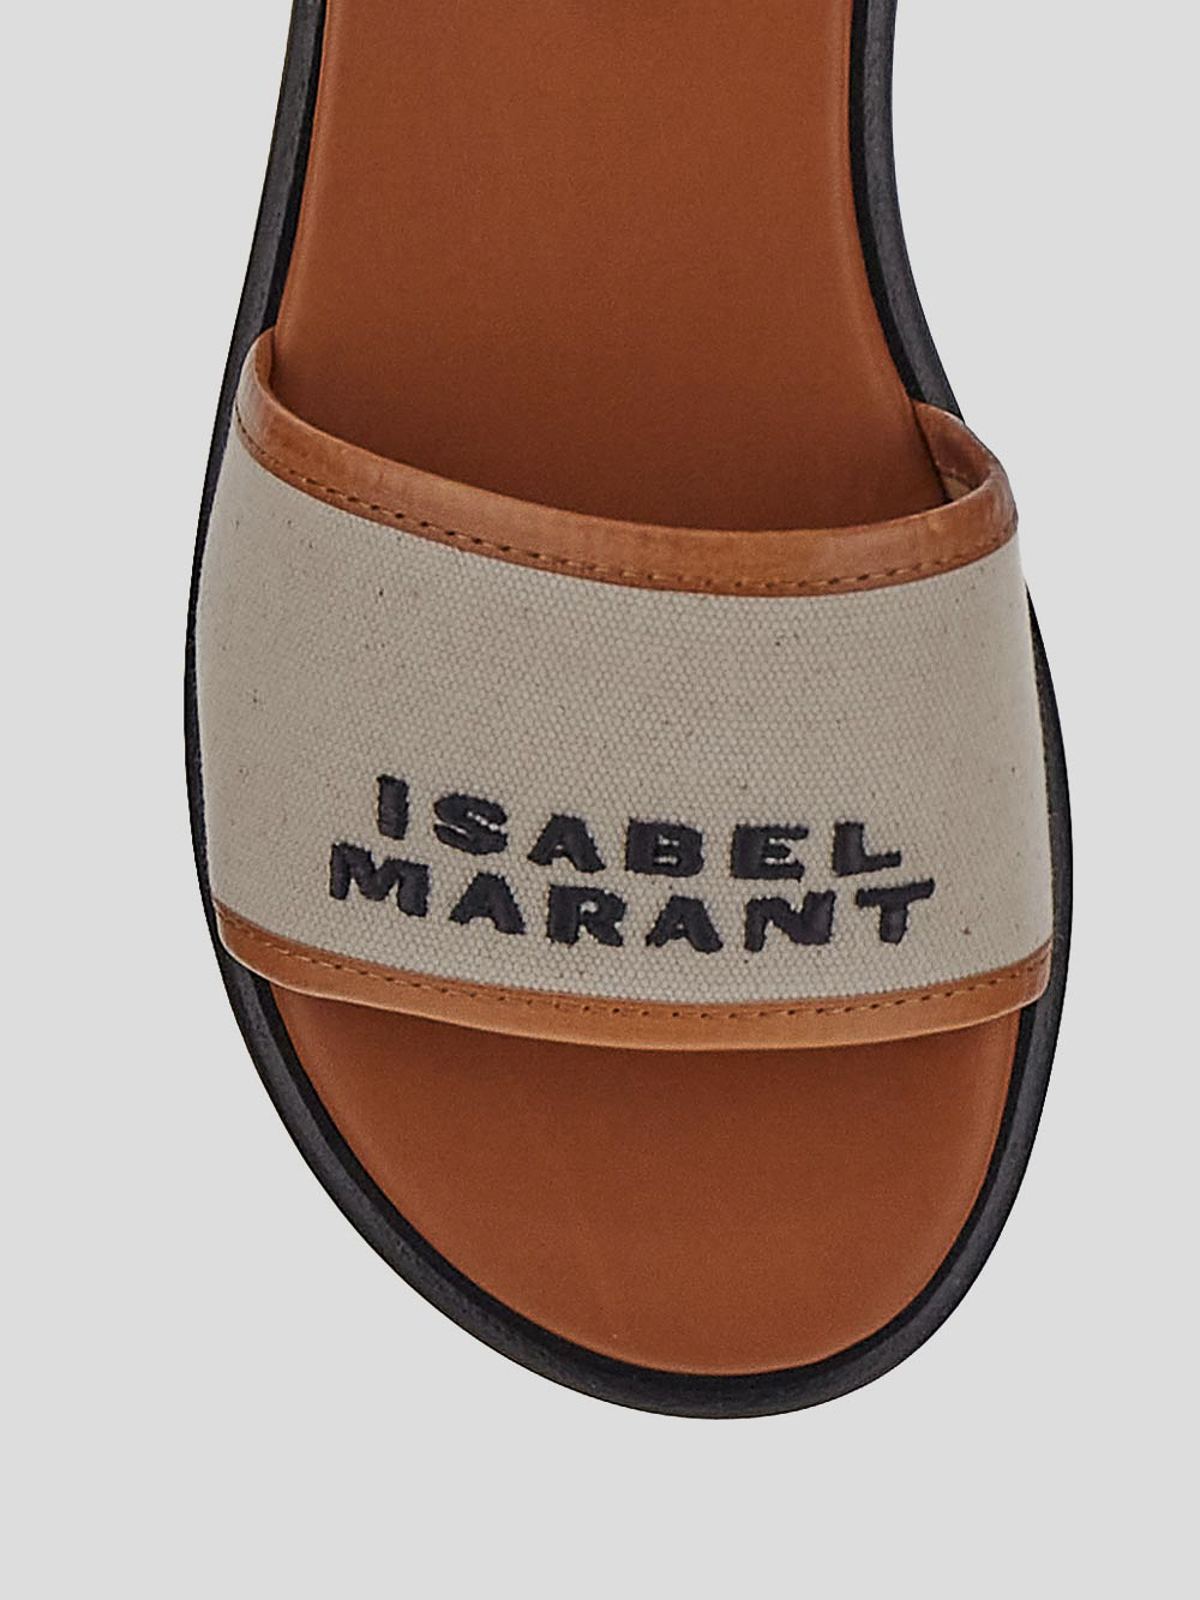 Shop Isabel Marant Sandals In Light Beige